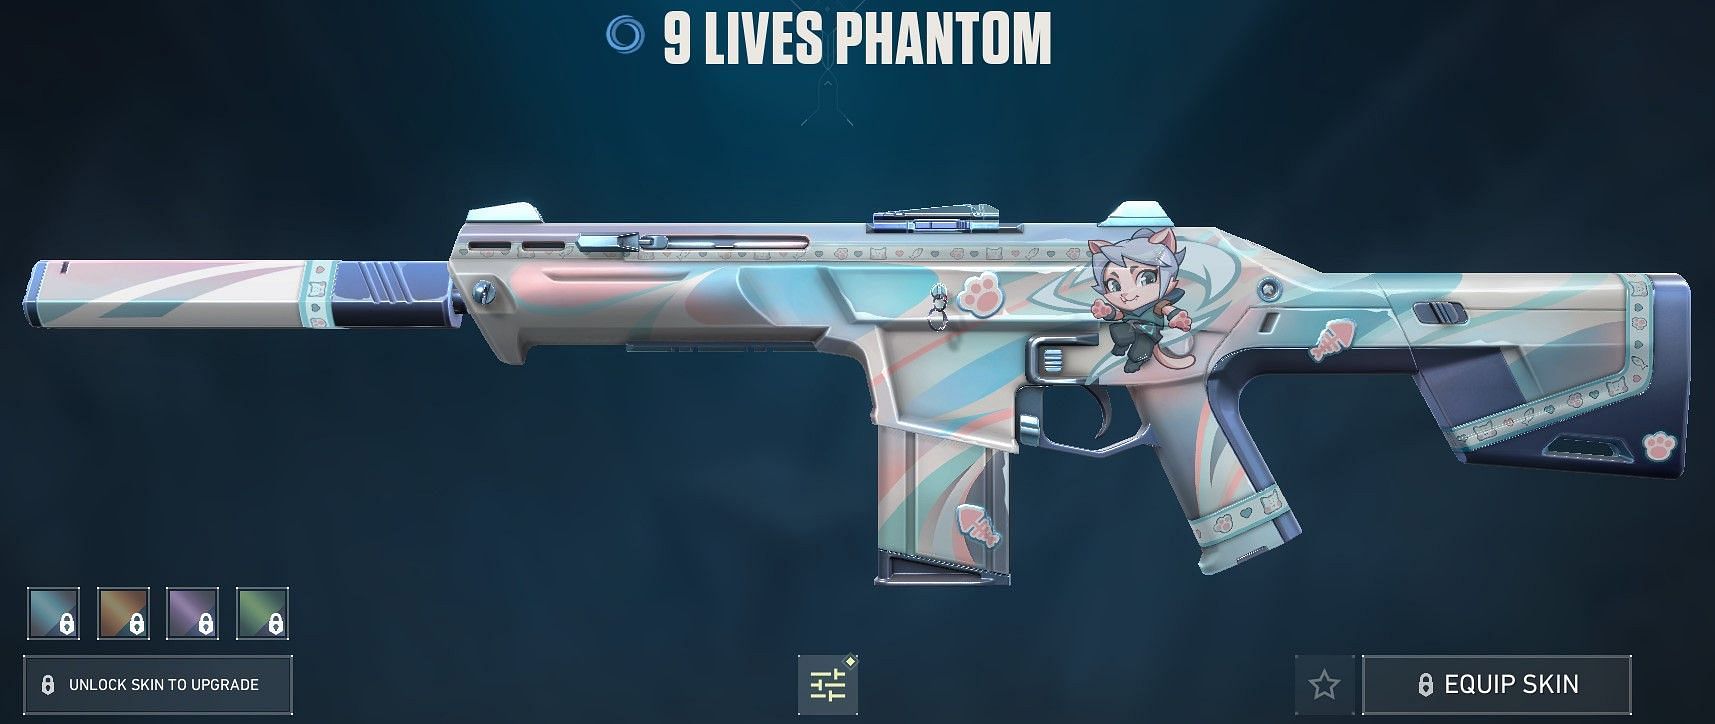 9 Lives Phantom (Image via Riot Games)